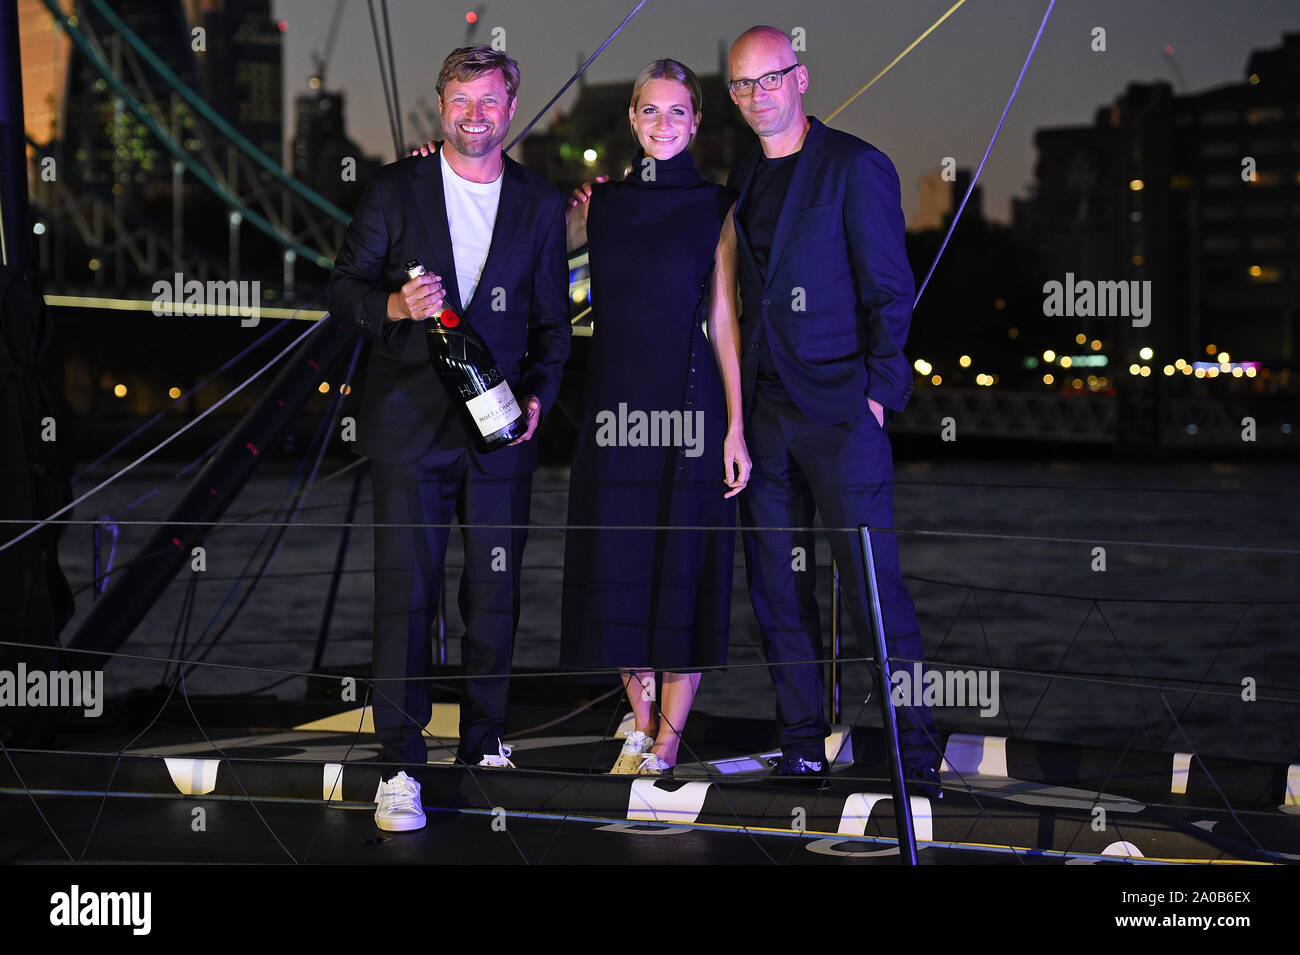 (De gauche à droite) Yachtsman Alex Thomson, Poppy Delevingne et Hugo Boss PDG Mark Langer à la cérémonie de baptême pour le yacht Hugo Boss à Londres. Banque D'Images